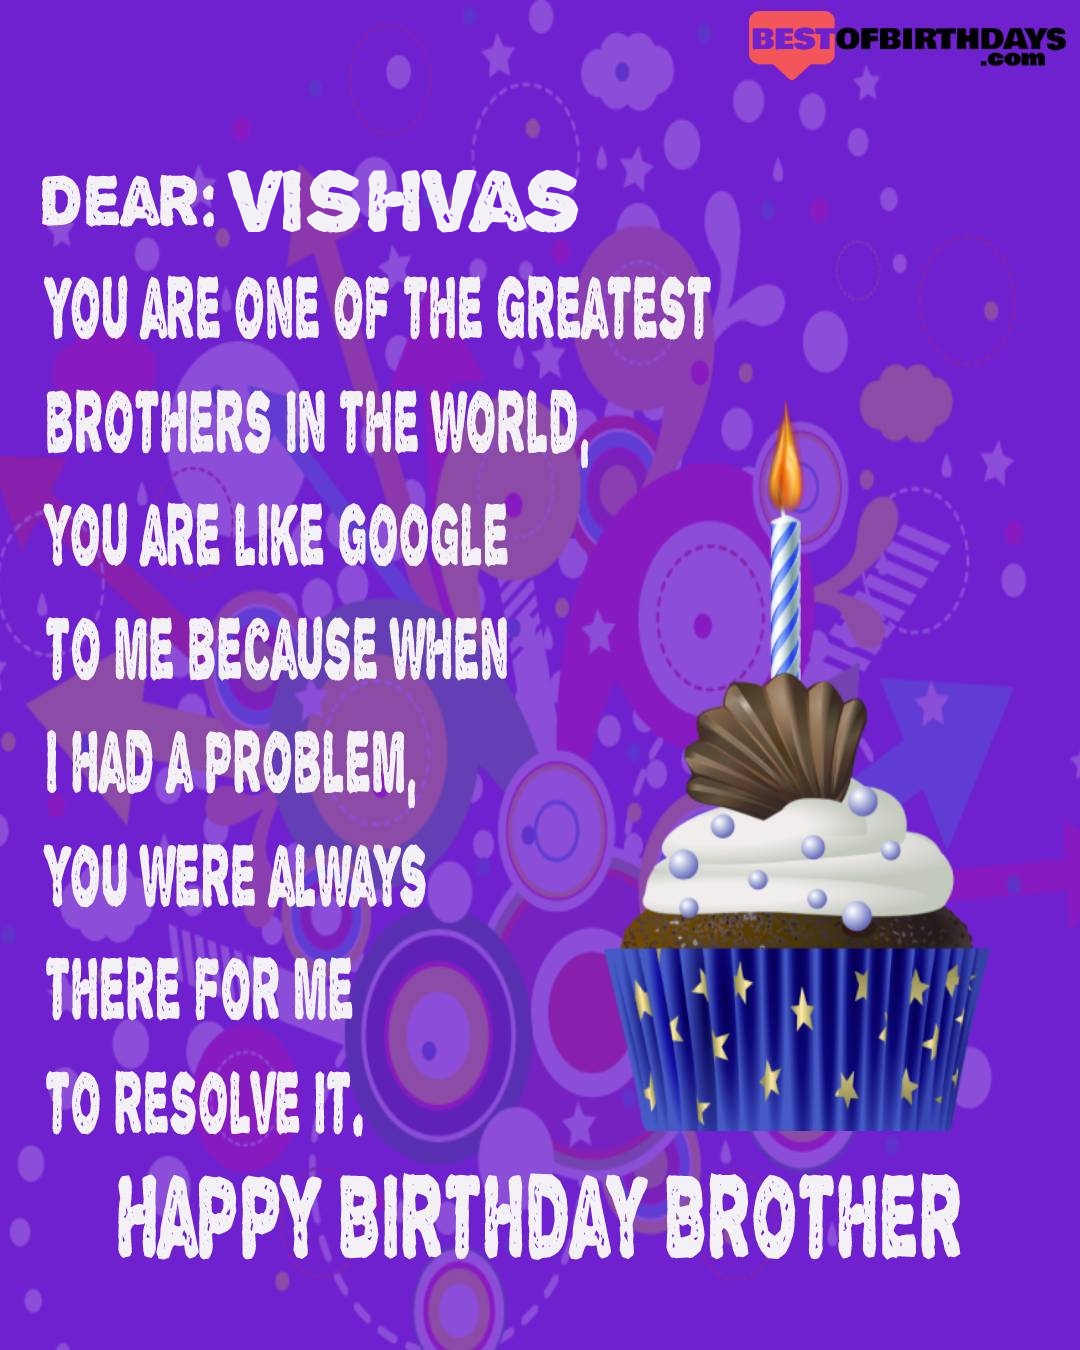 Happy birthday vishvas bhai brother bro